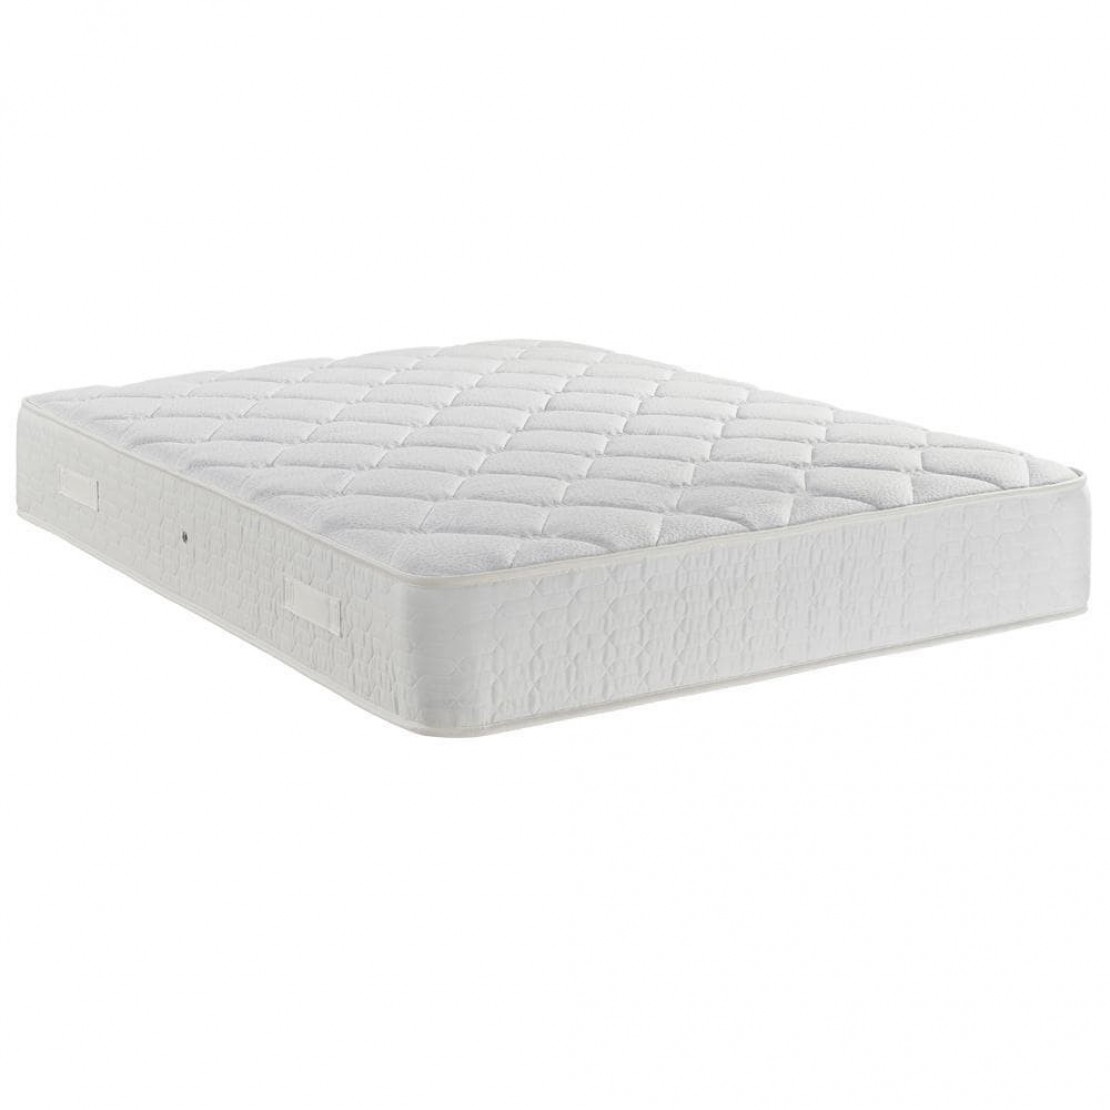 /_images/product-photos/dreamland-beds-dreamflex-mattress-a.jpg